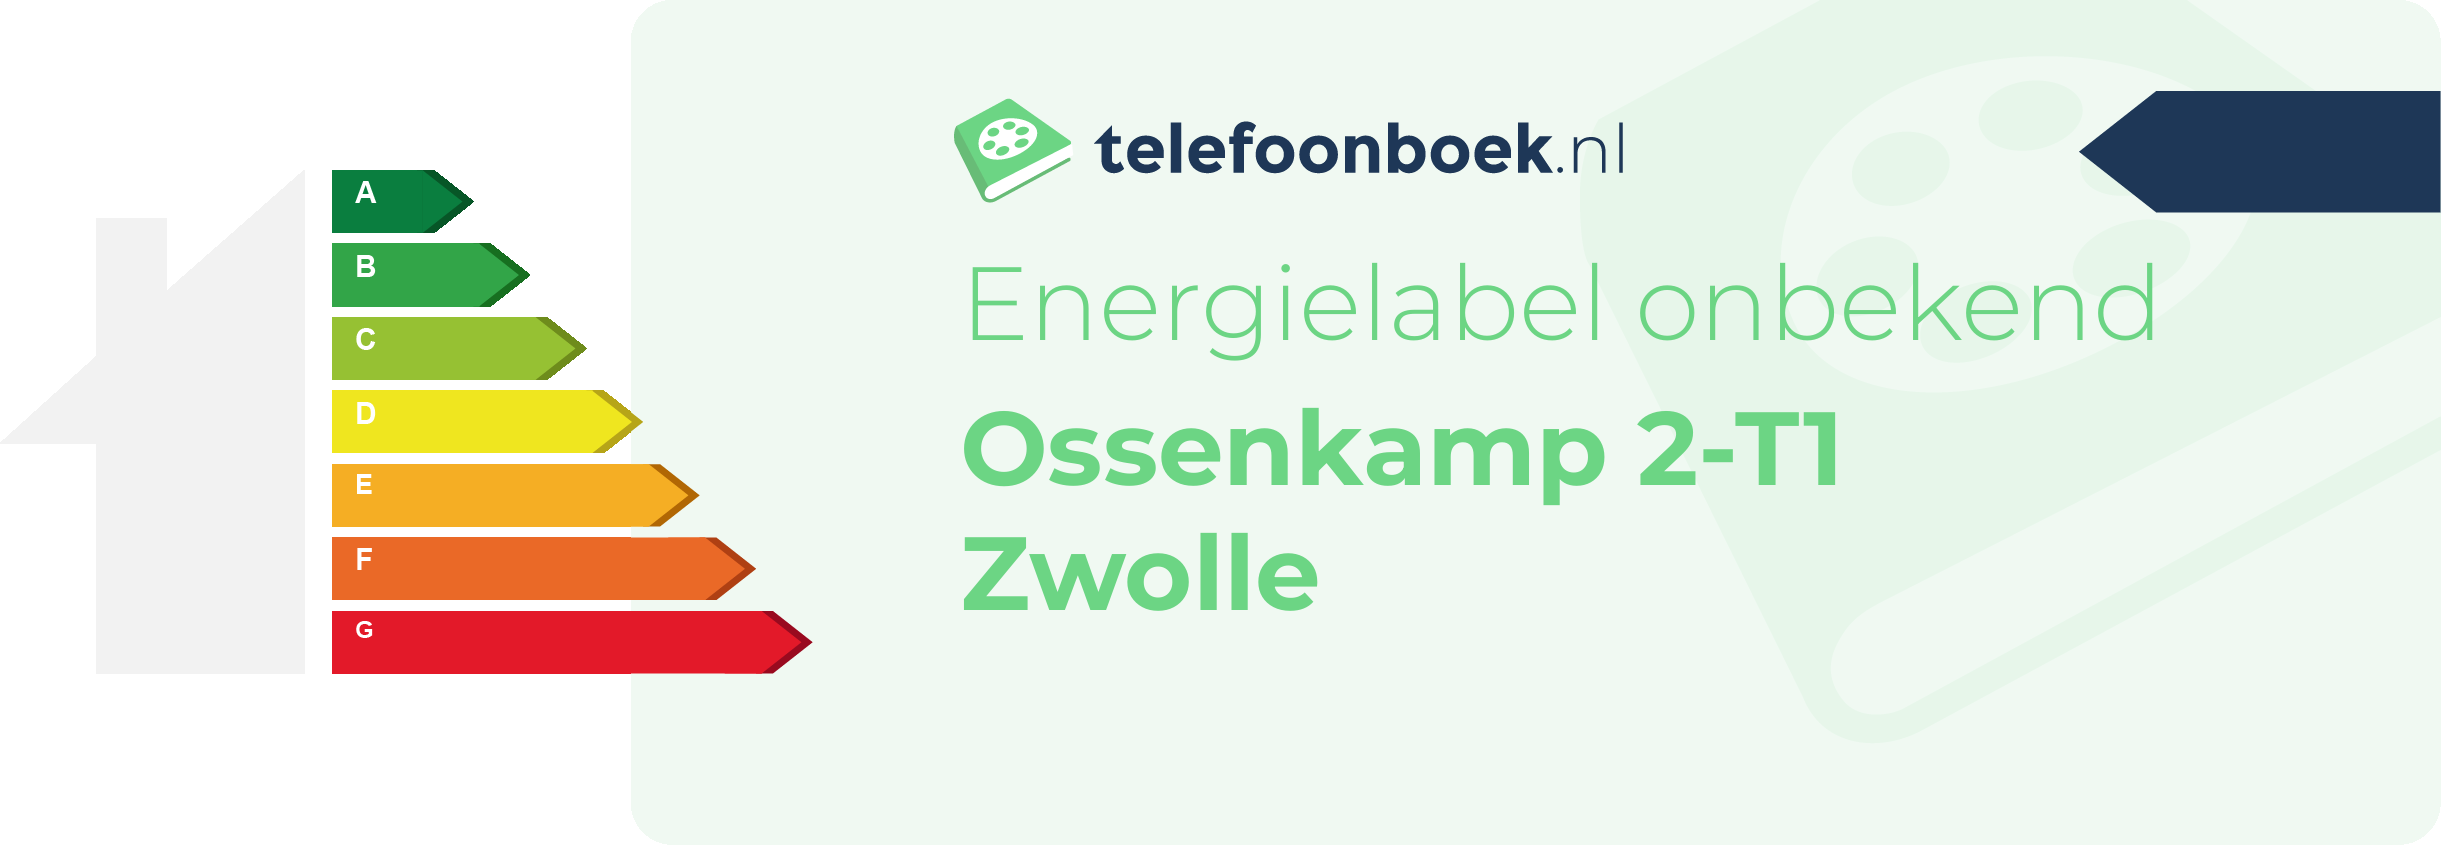 Energielabel Ossenkamp 2-T1 Zwolle